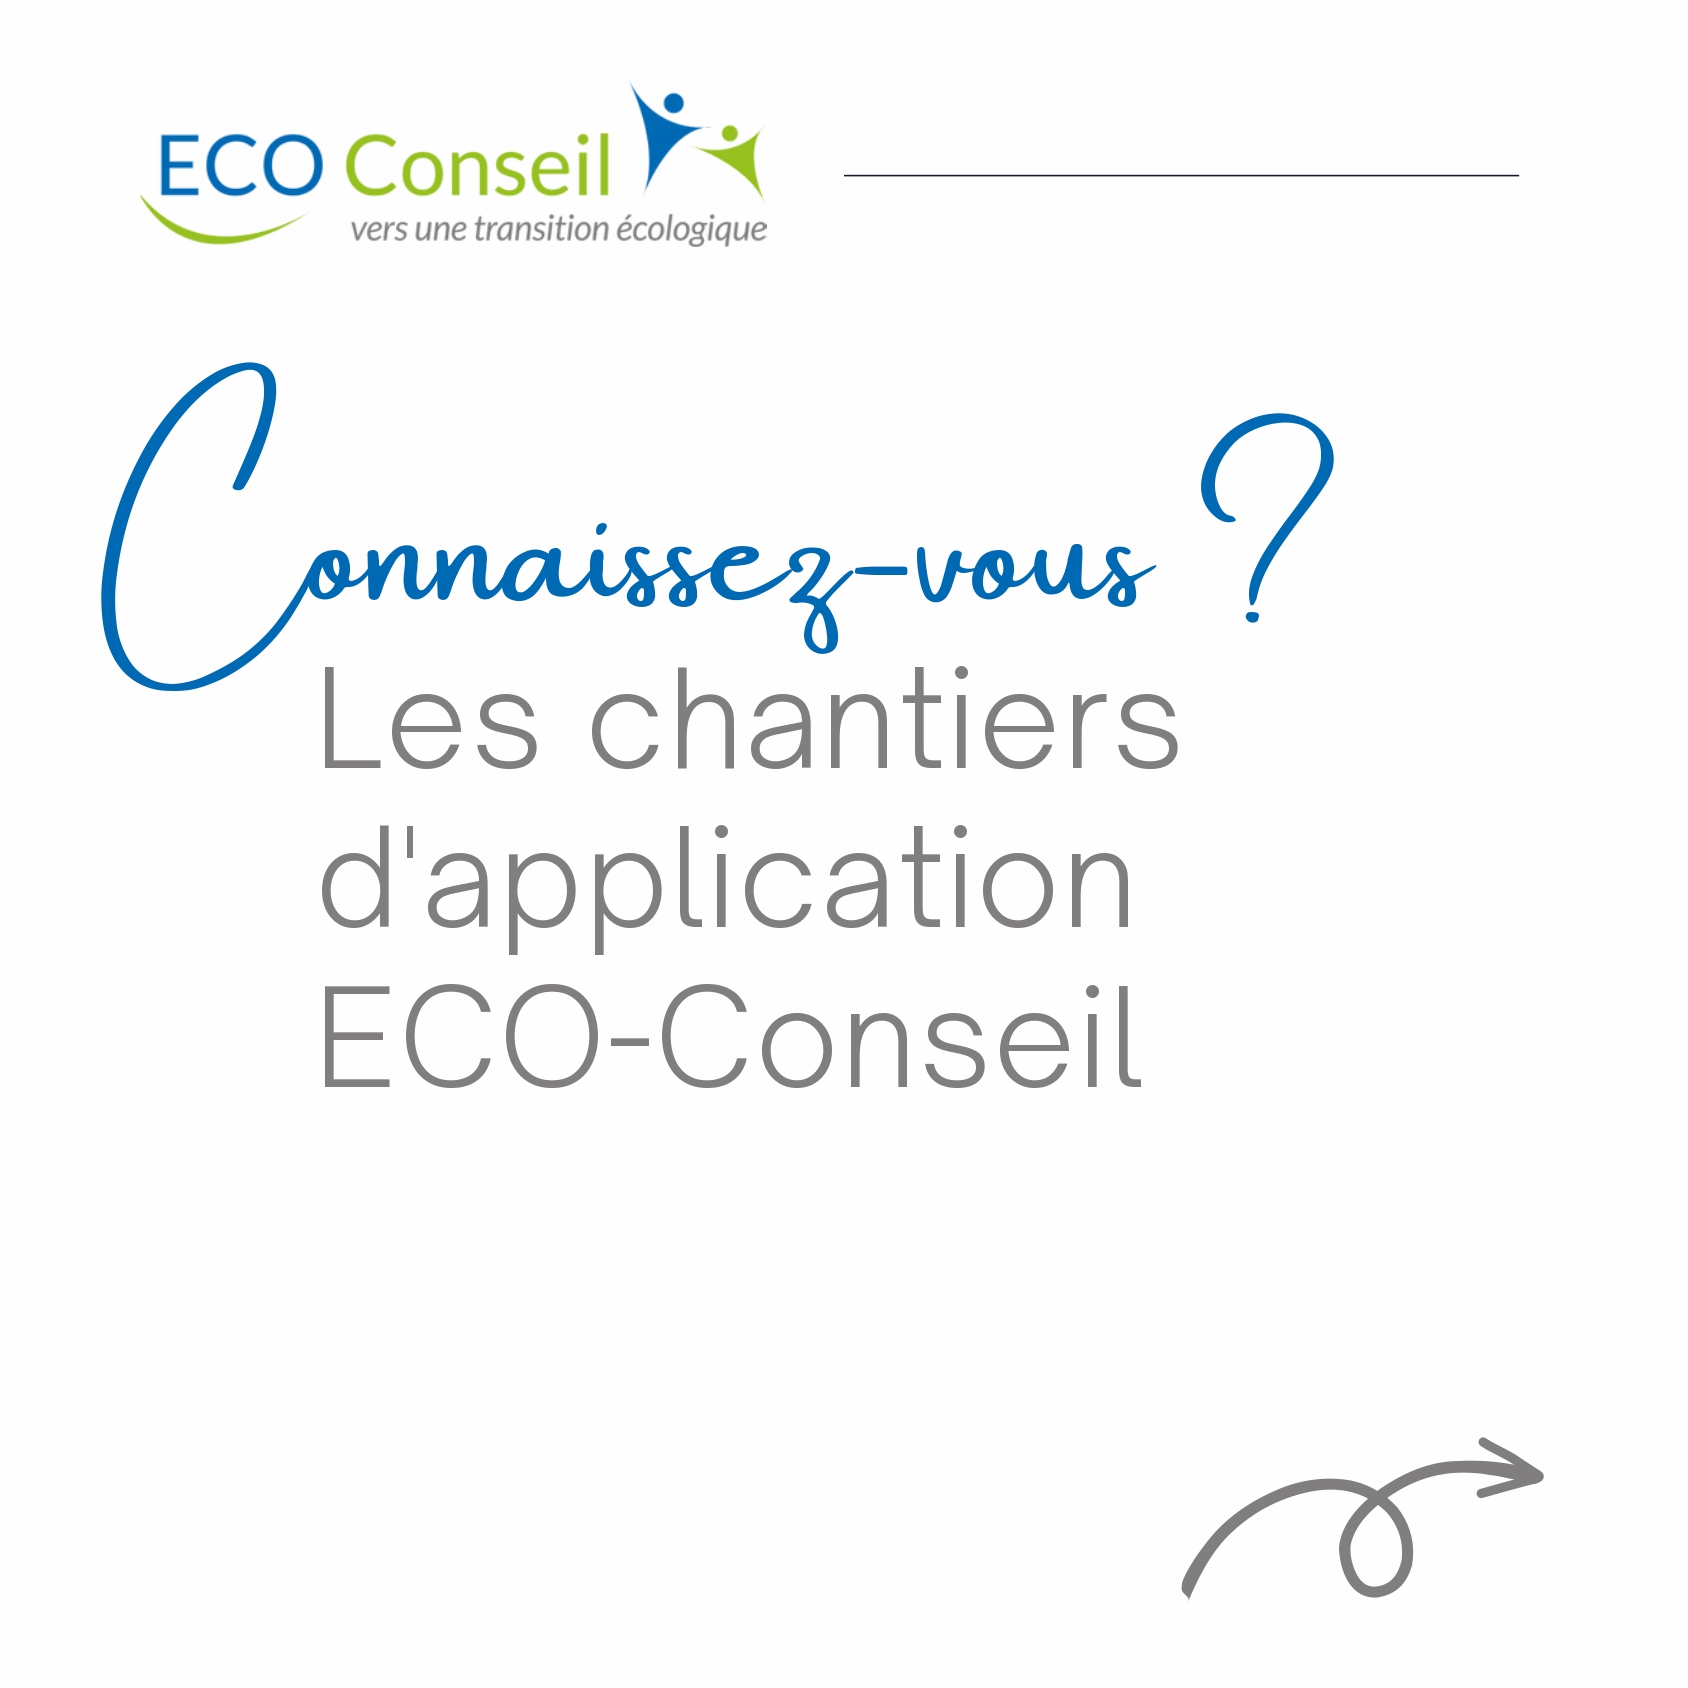 Plaquette de présentation des chantiers d'application ECO-Conseil